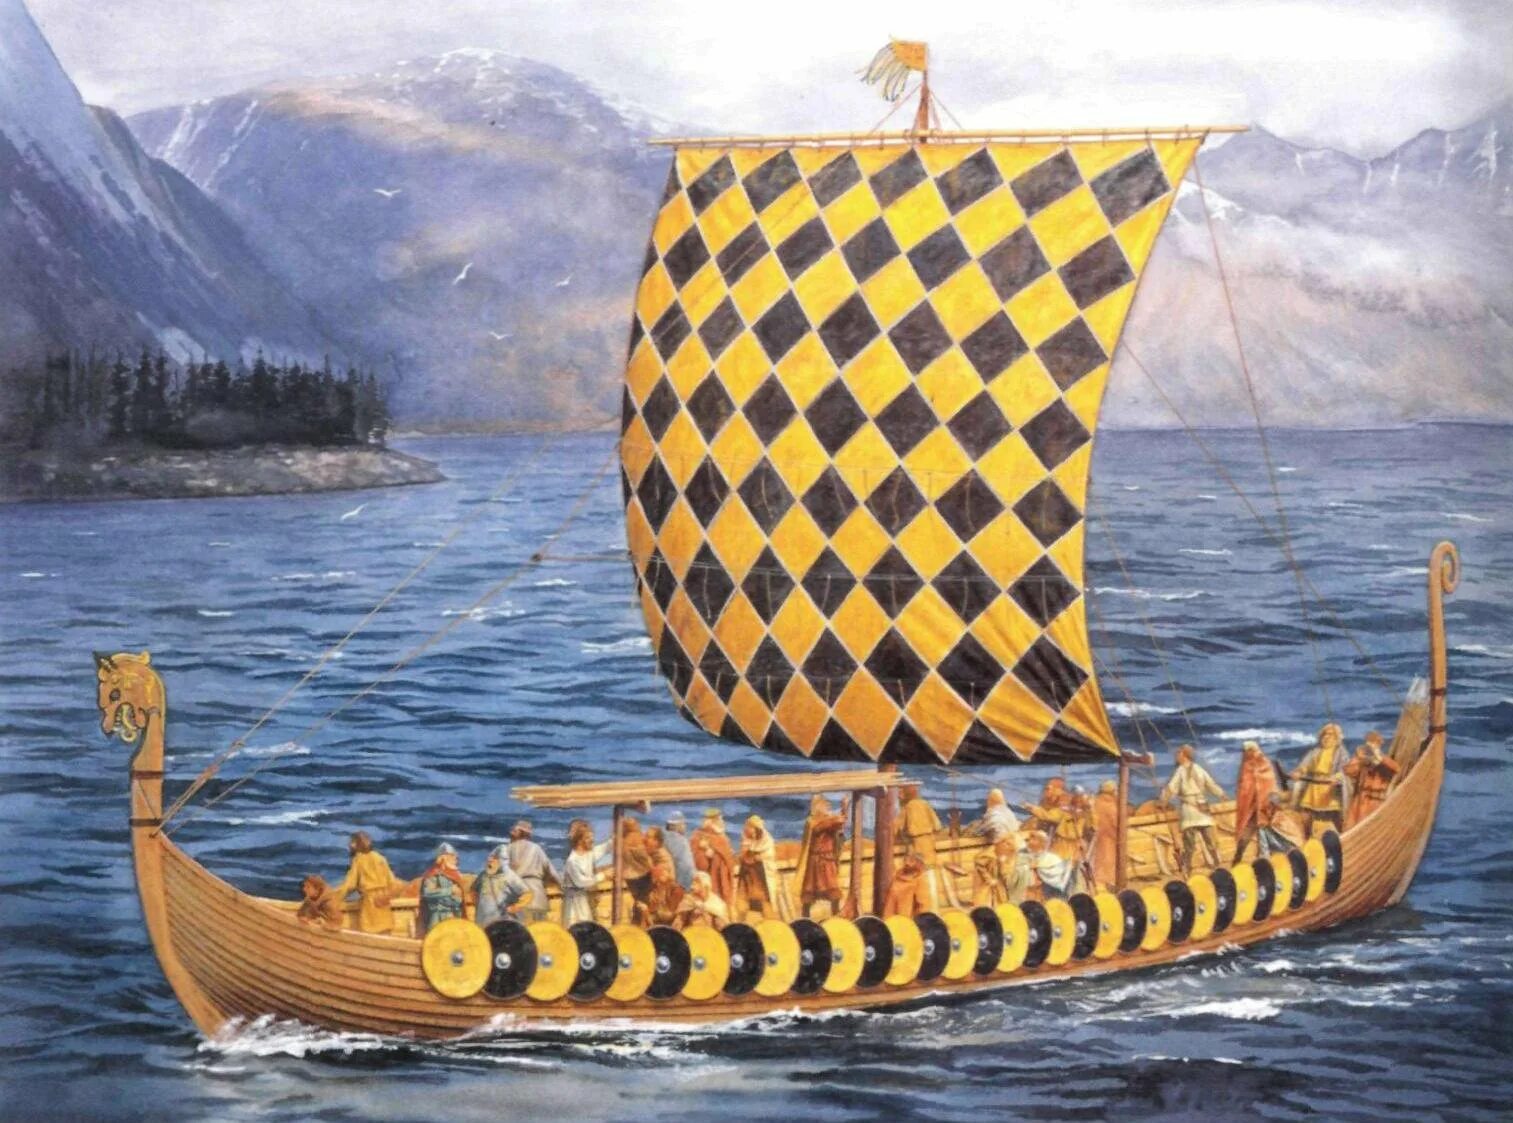 Карви корабль викингов. Ладья викингов дракар. Гокштадский корабль (дракар). Корабль викингов Драккар 10 век. Ладья счет